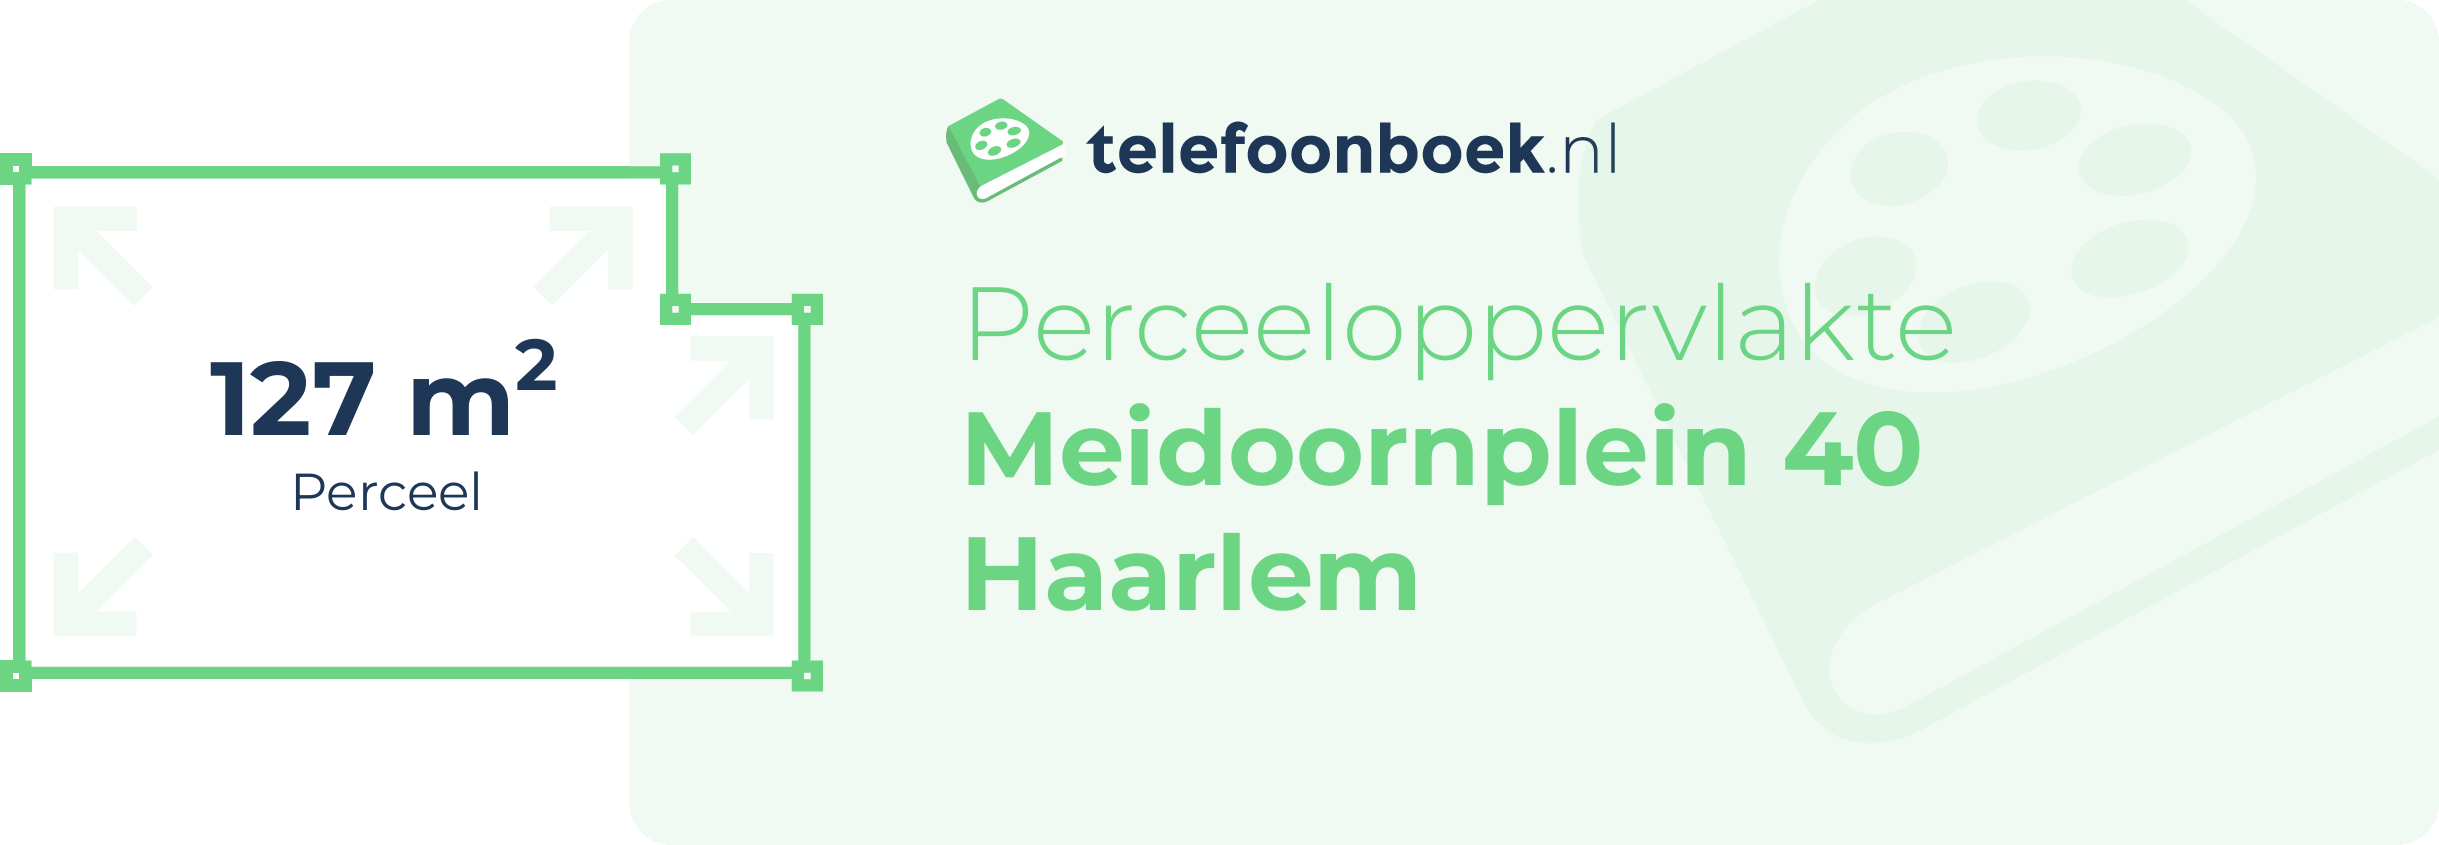 Perceeloppervlakte Meidoornplein 40 Haarlem